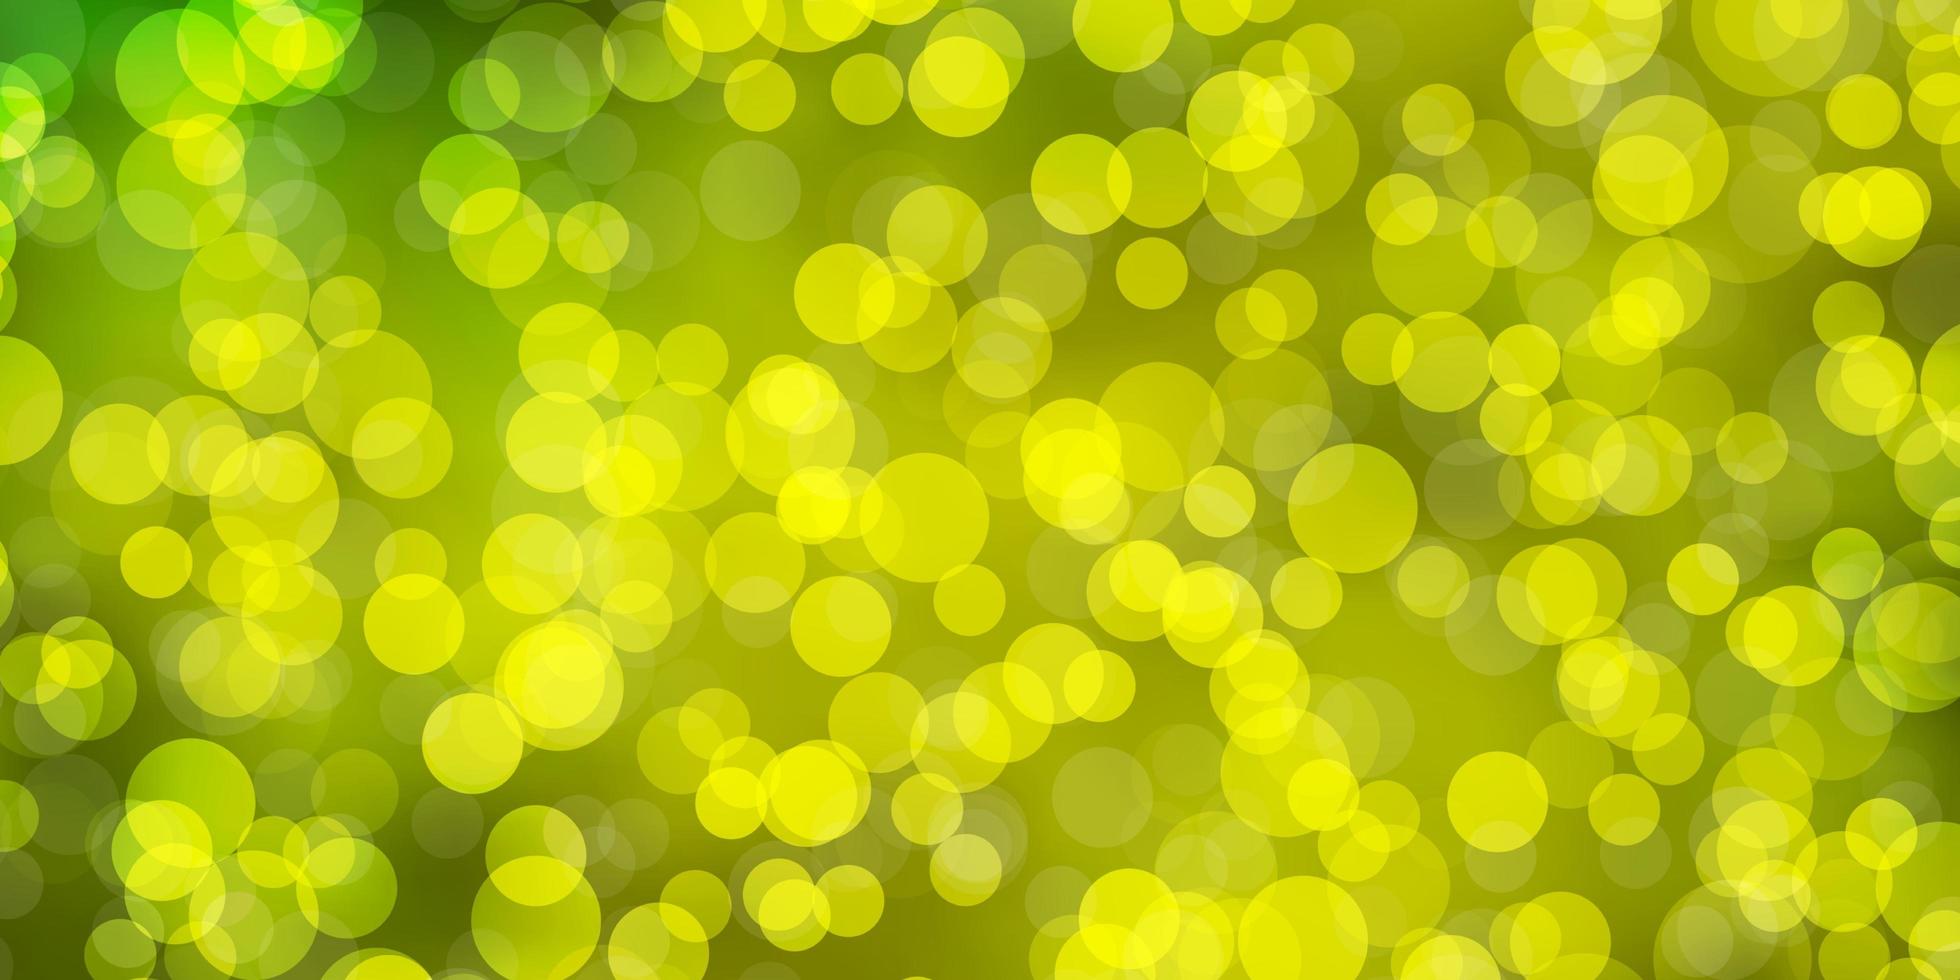 hellgrüne, gelbe Vektorschablone mit Kreisen. vektor